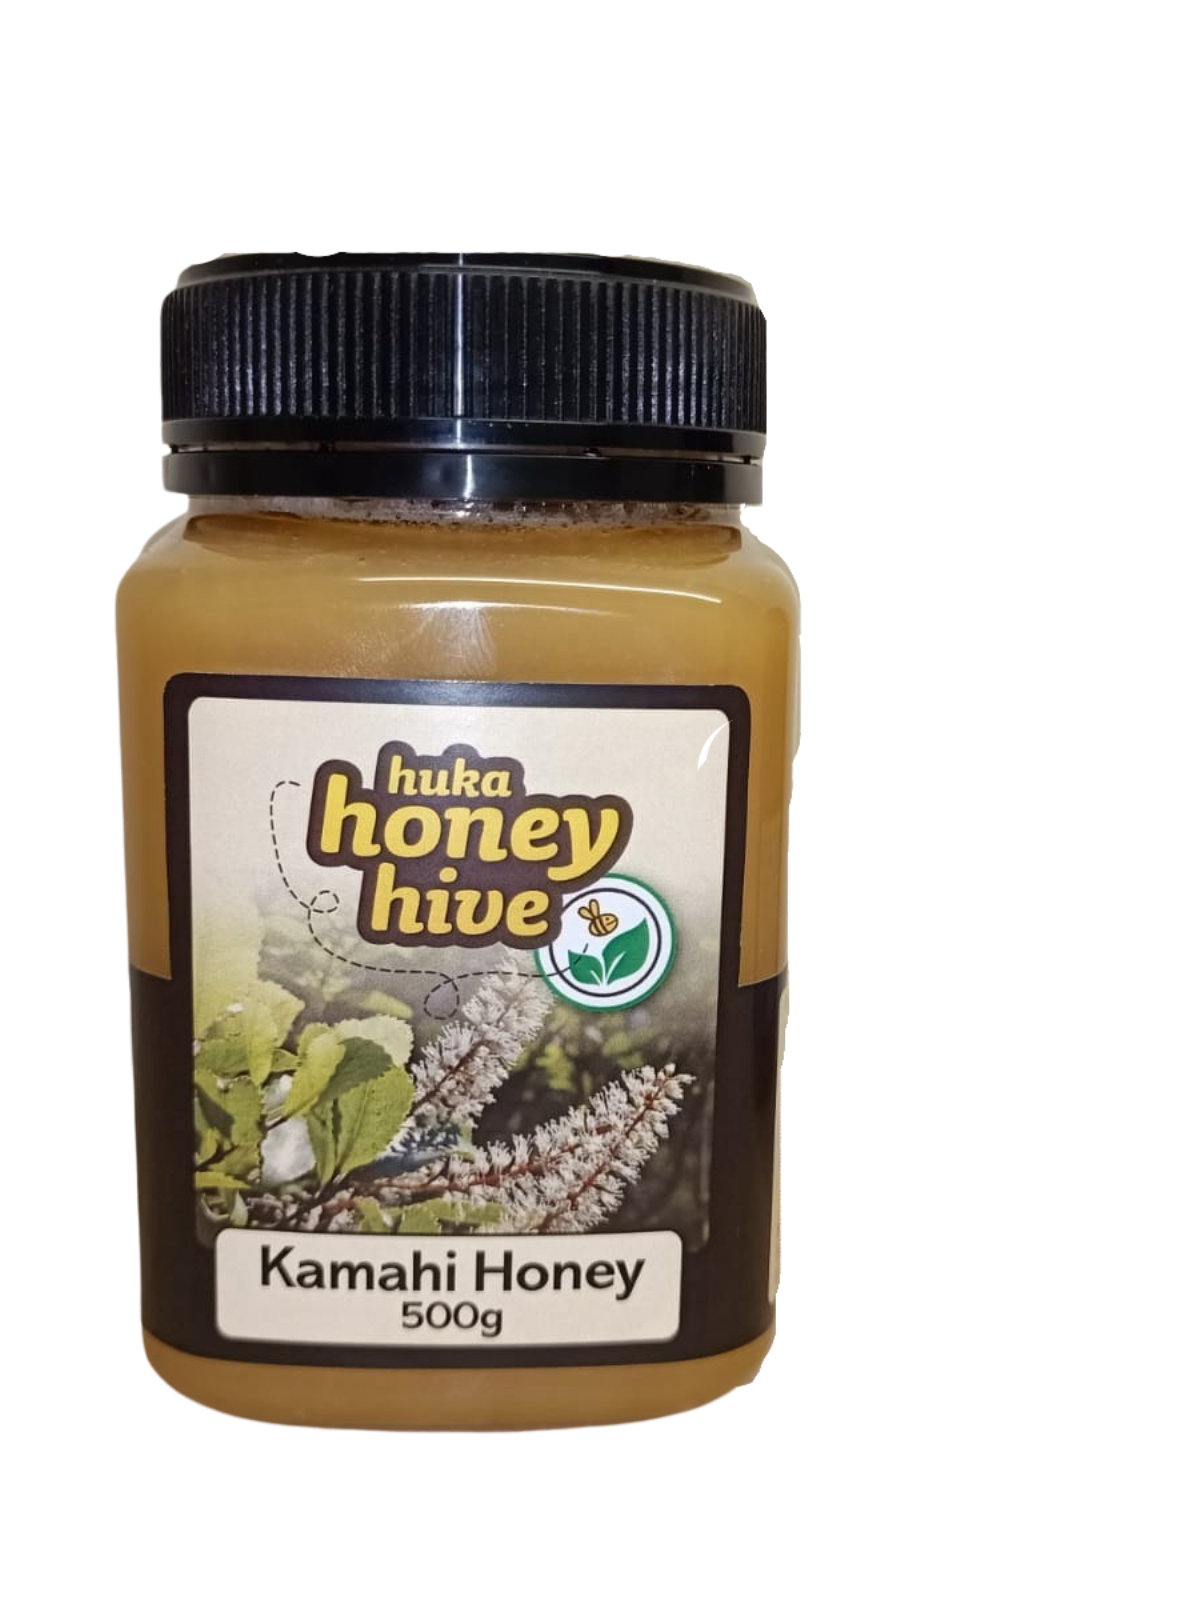 Huka Honey Hive Kamahi Honey 500g